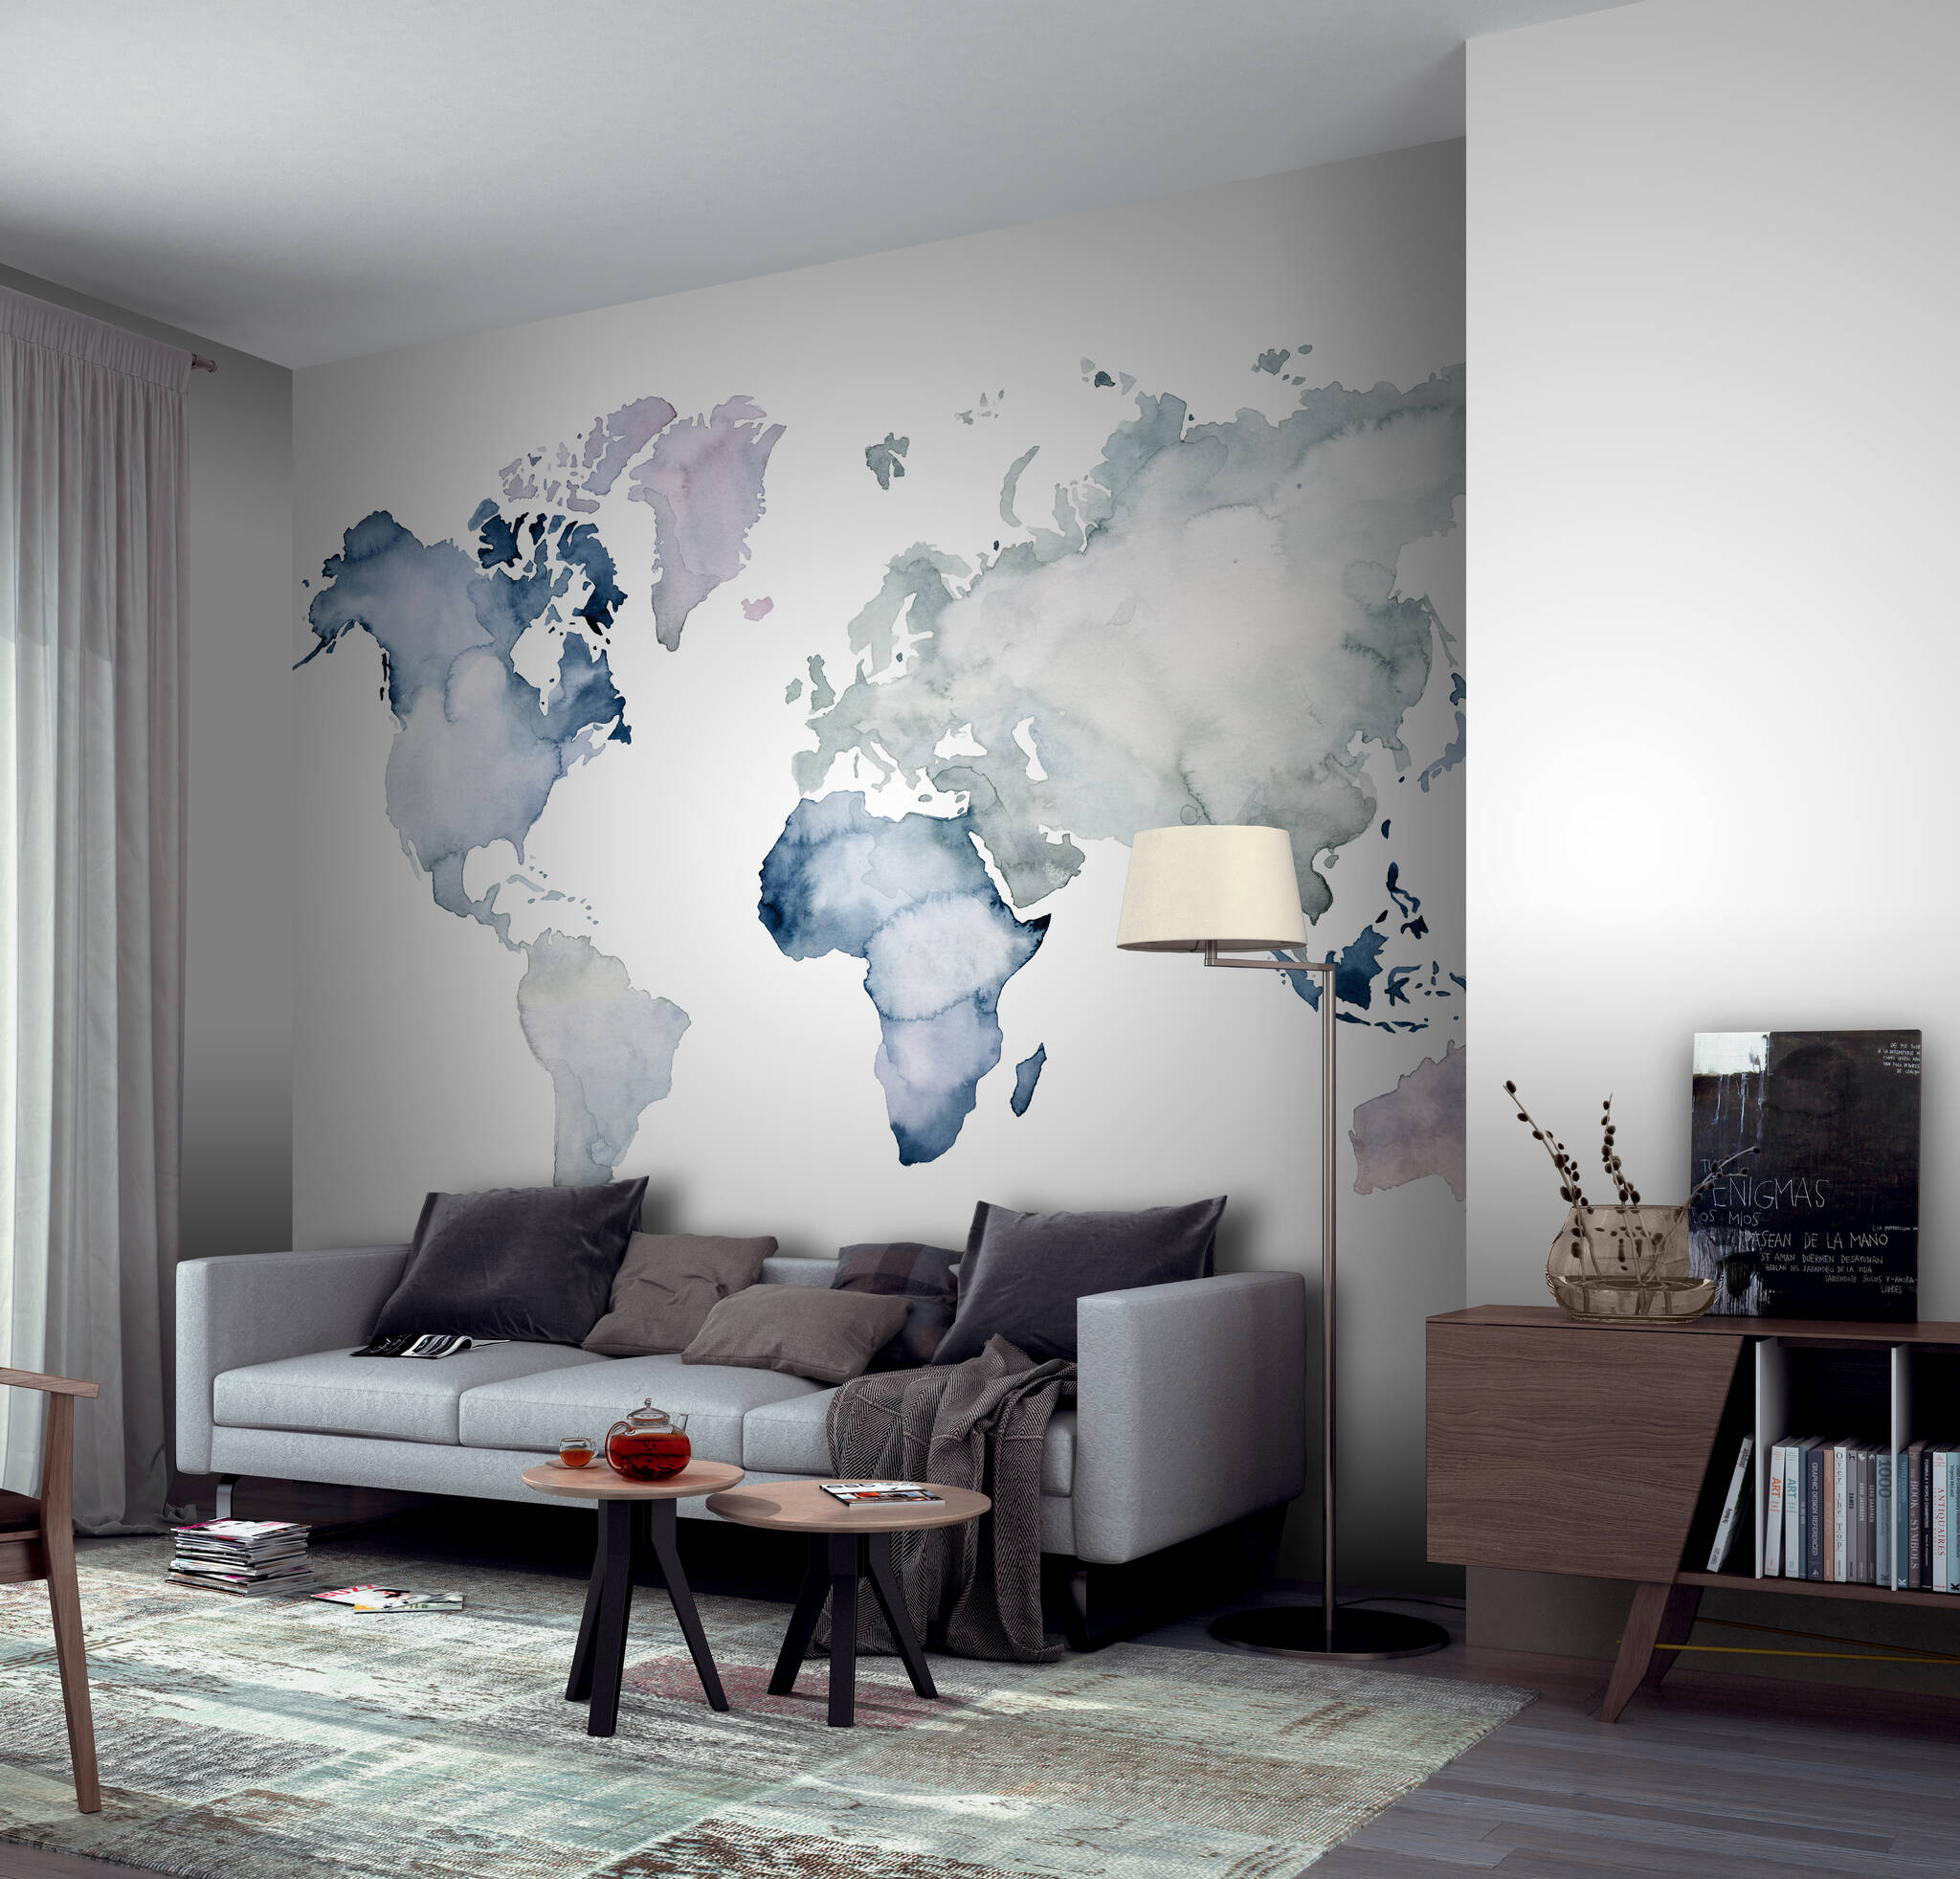 Wohnzimmer mit Wandbild - Weltkarte skizziert in Aquarellfarben